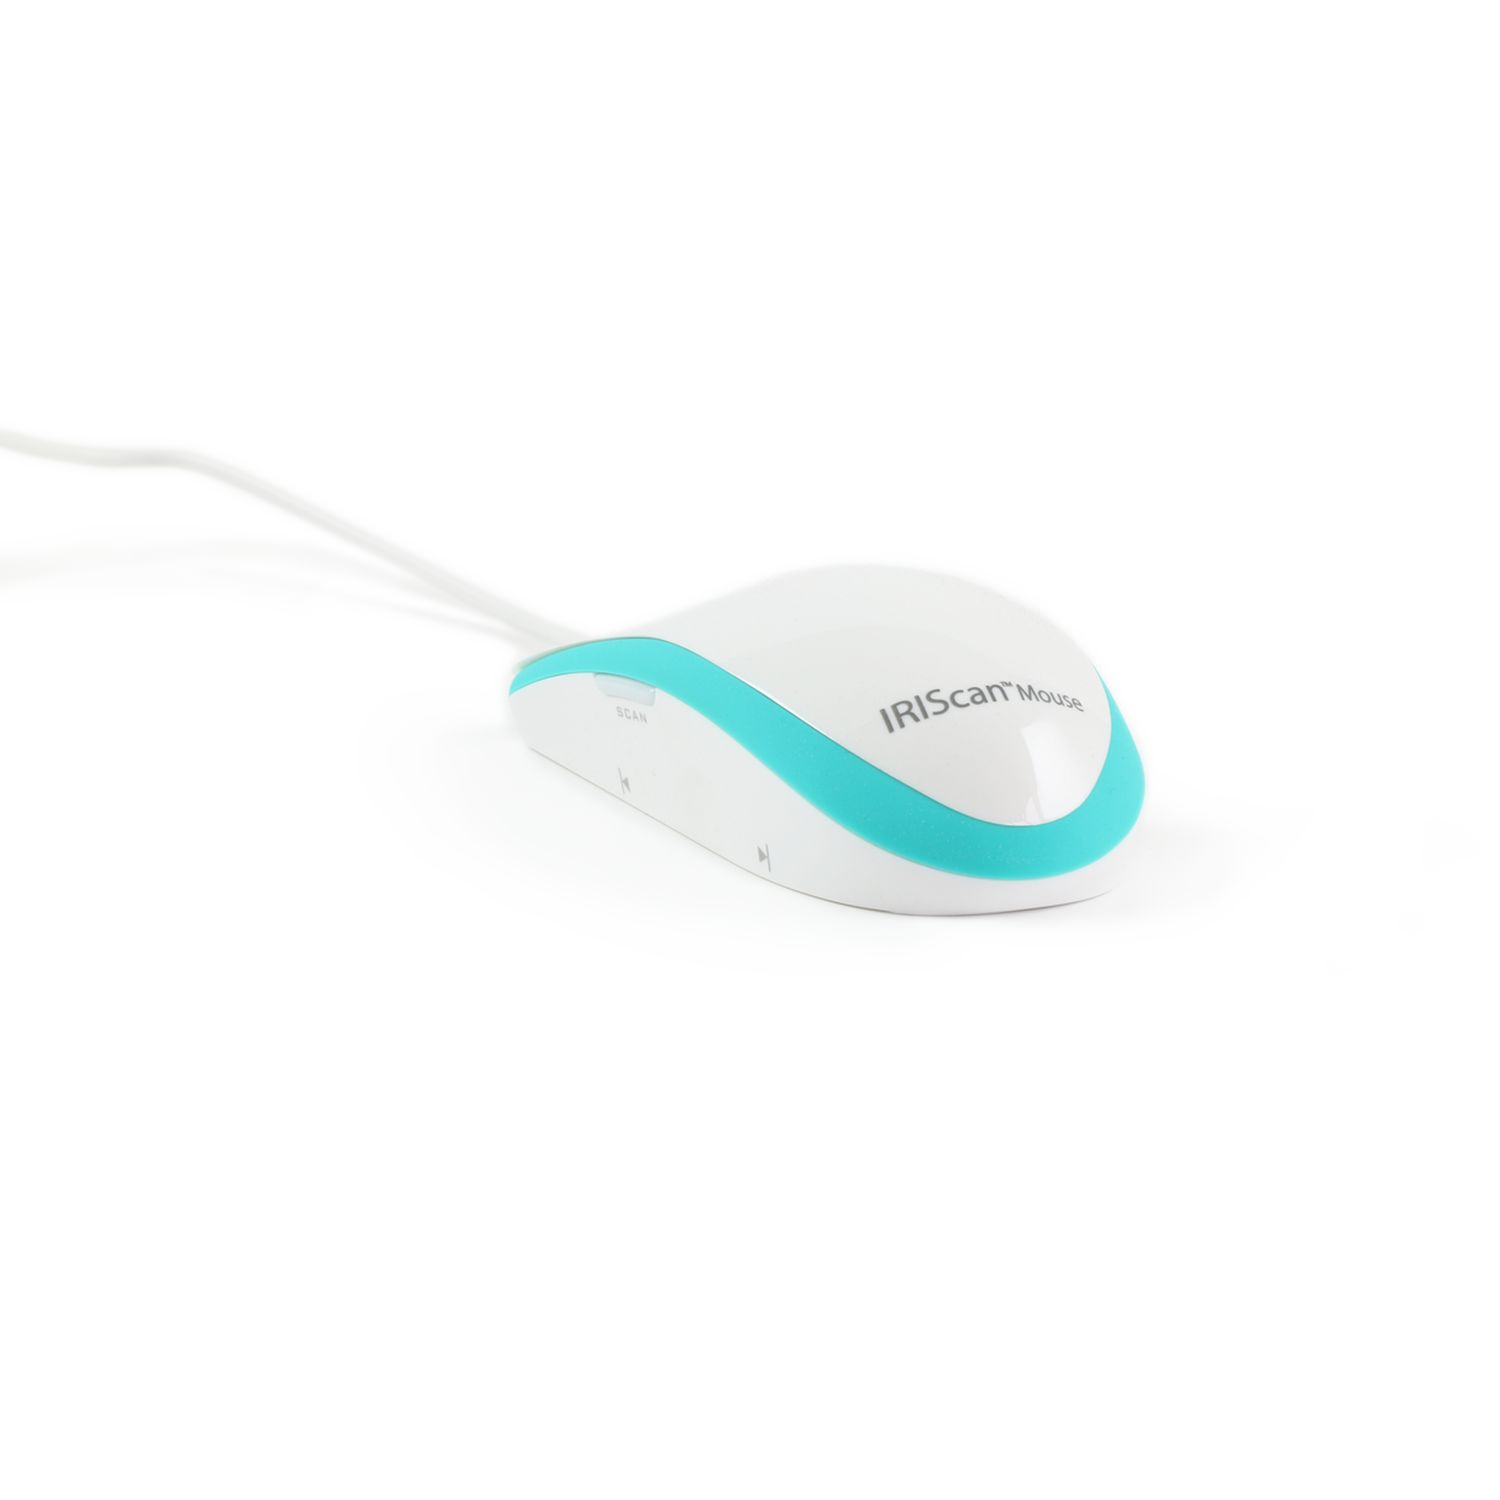 Souris-scanner IRIScan Mouse Executive 2 tout-en-un